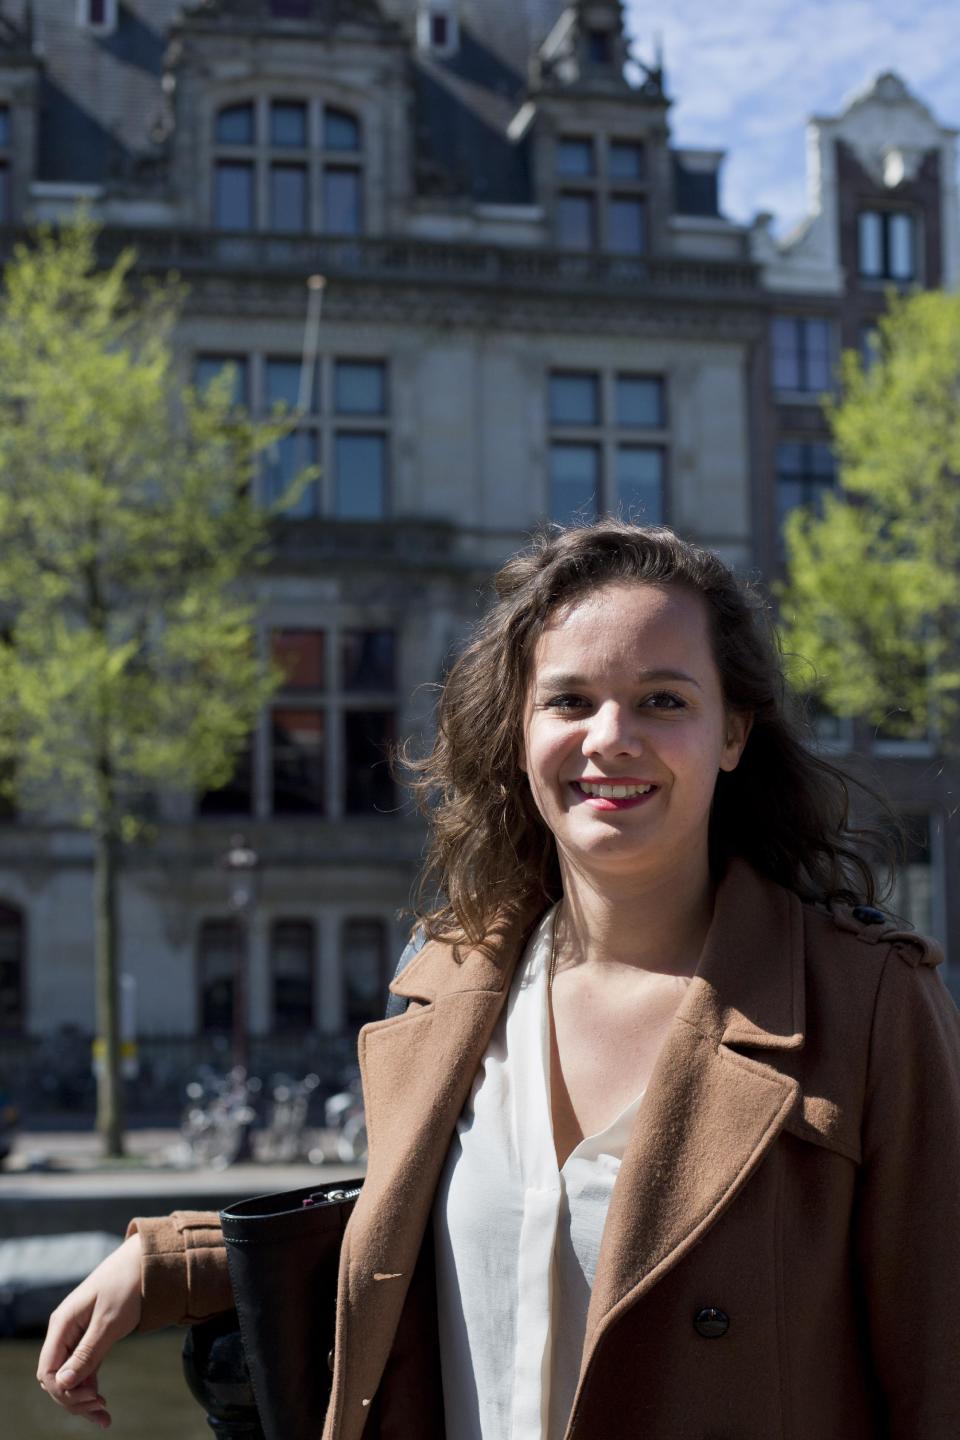 Fotografía del miércoles 16 de abril de 2014 de Charlotte van den Berg posando fuera del Instituto para Estudios de Guerra, Holocausto y Genocidios (al fondo), en Amsterdam, Holanda. (Foto AP/Peter Dejong)